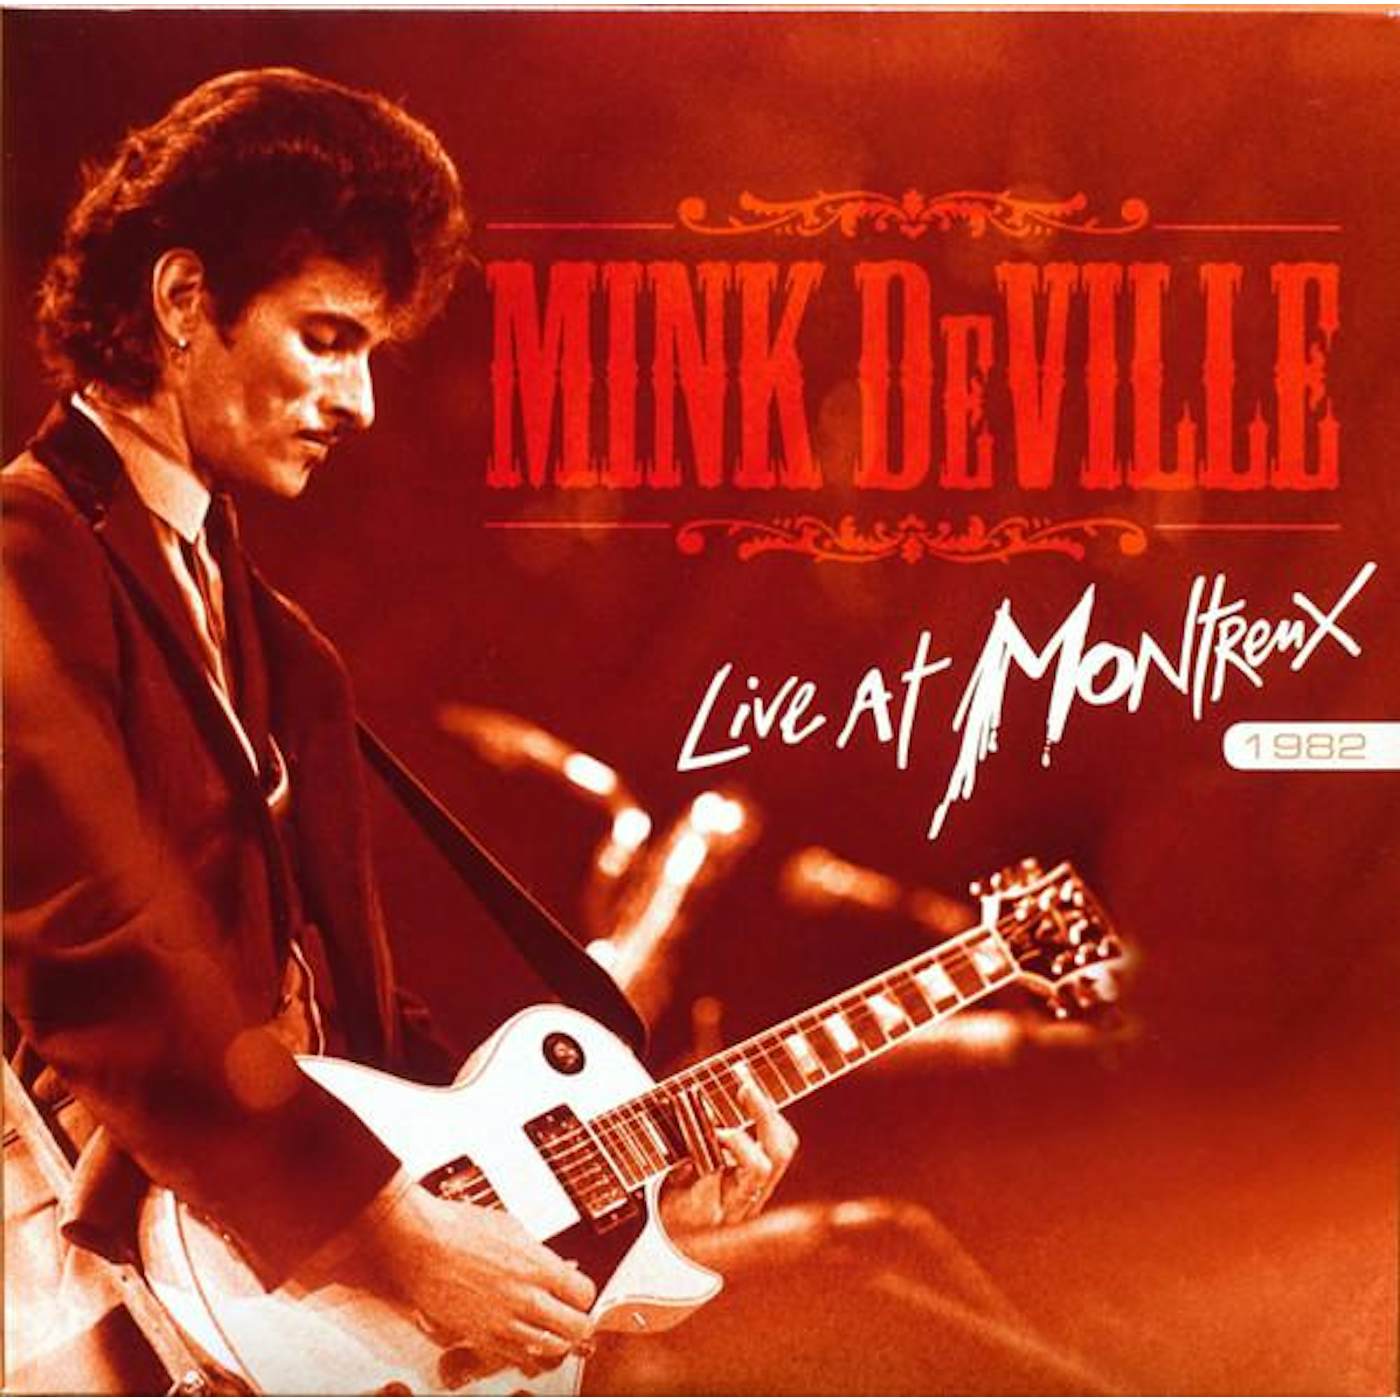 Mink DeVille Live At Montreux 1982 Vinyl Record